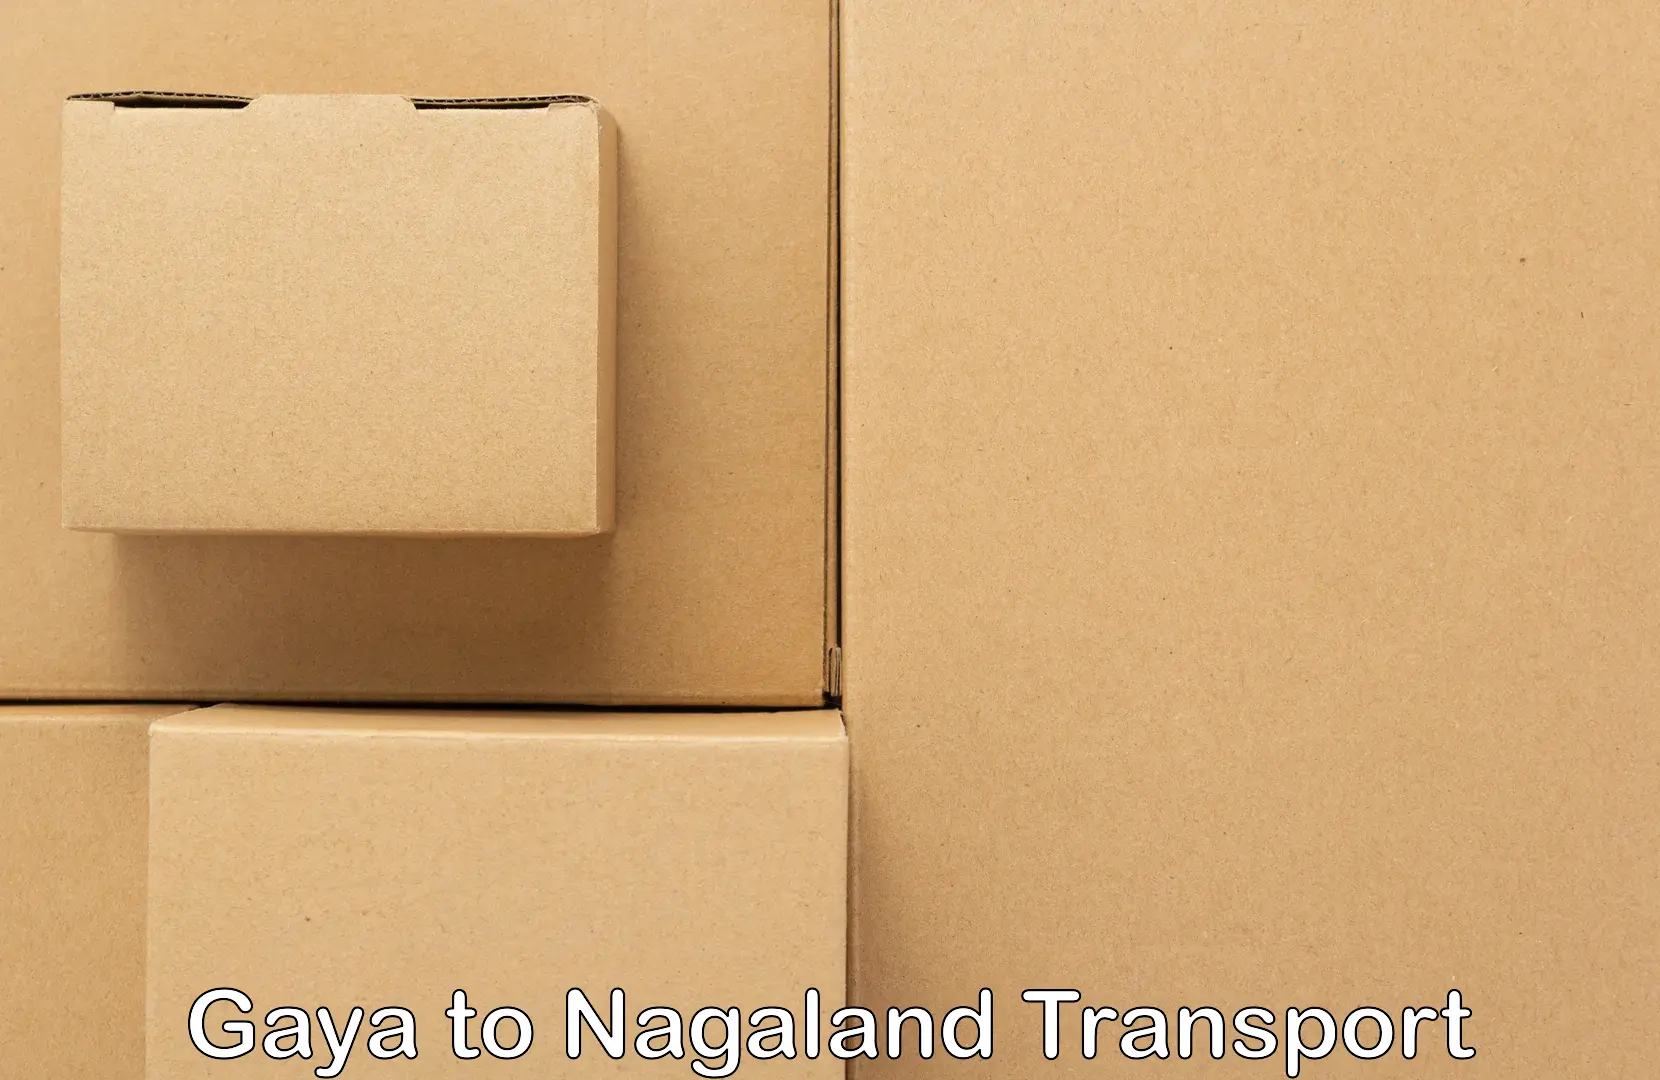 Vehicle parcel service Gaya to Nagaland